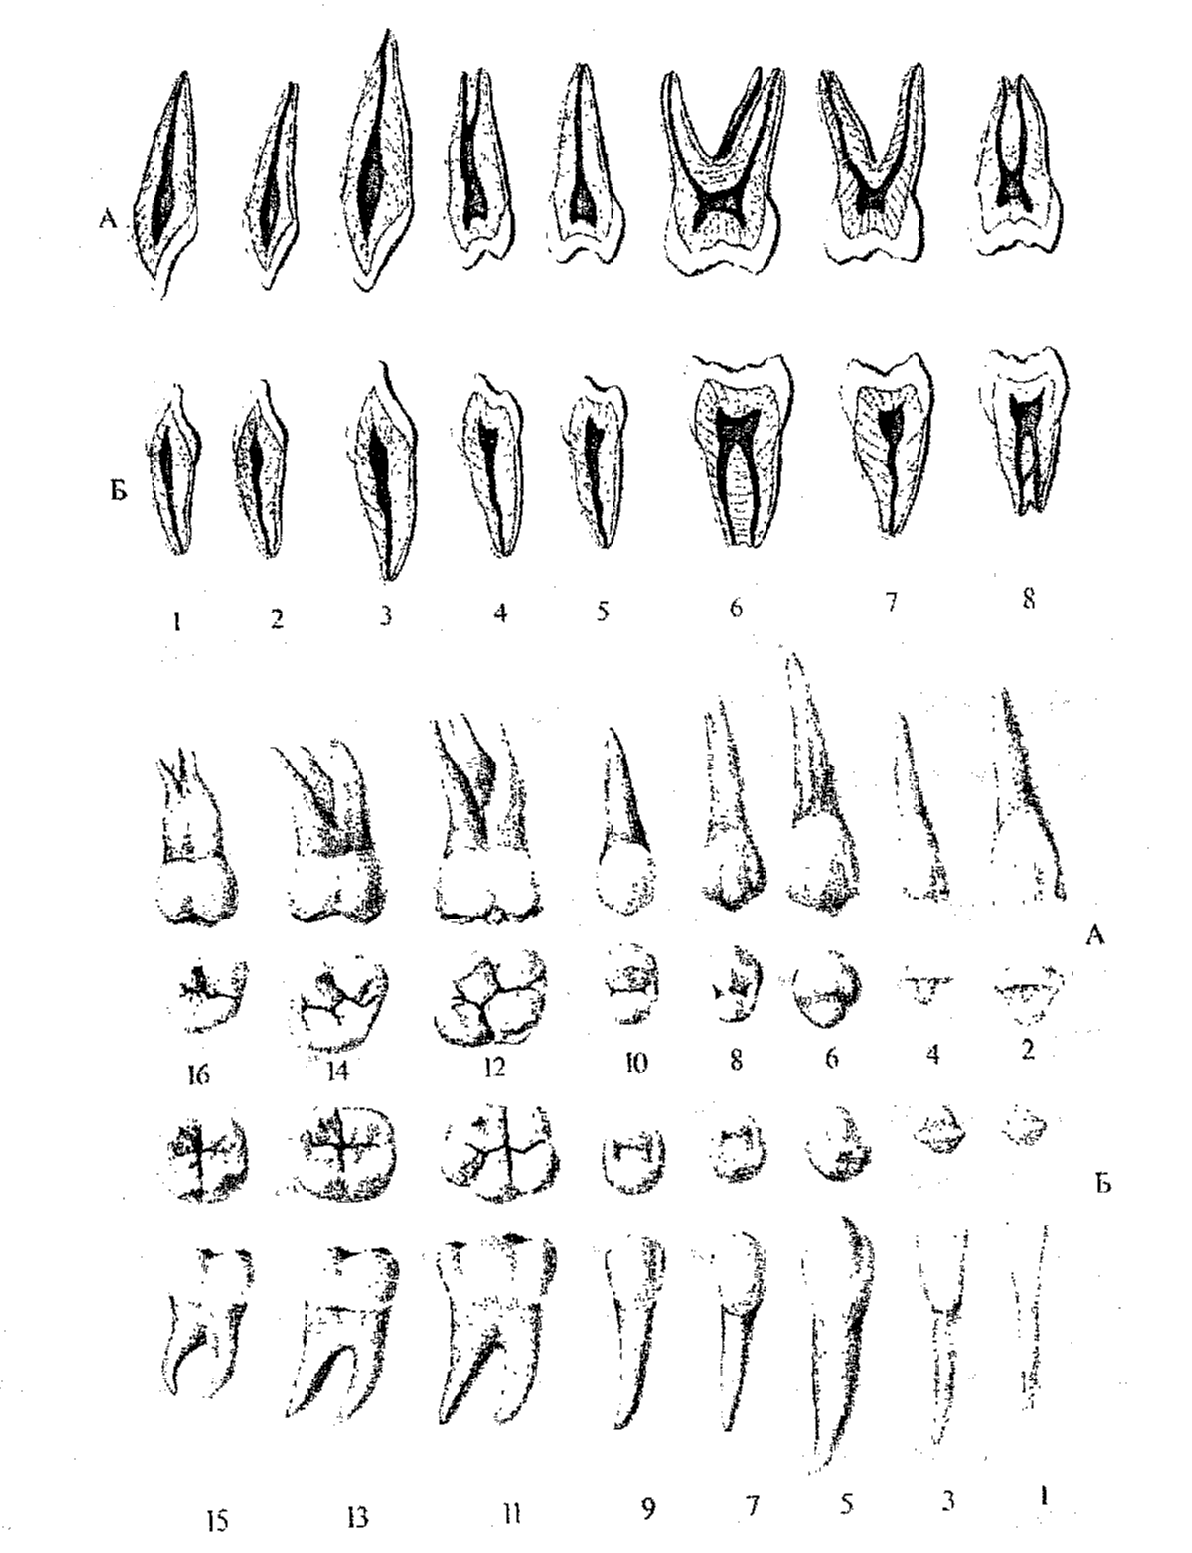 Зуб семерка верхний. Анатомия зубов верхней челюсти. Корни 6 зуба верхней челюсти.